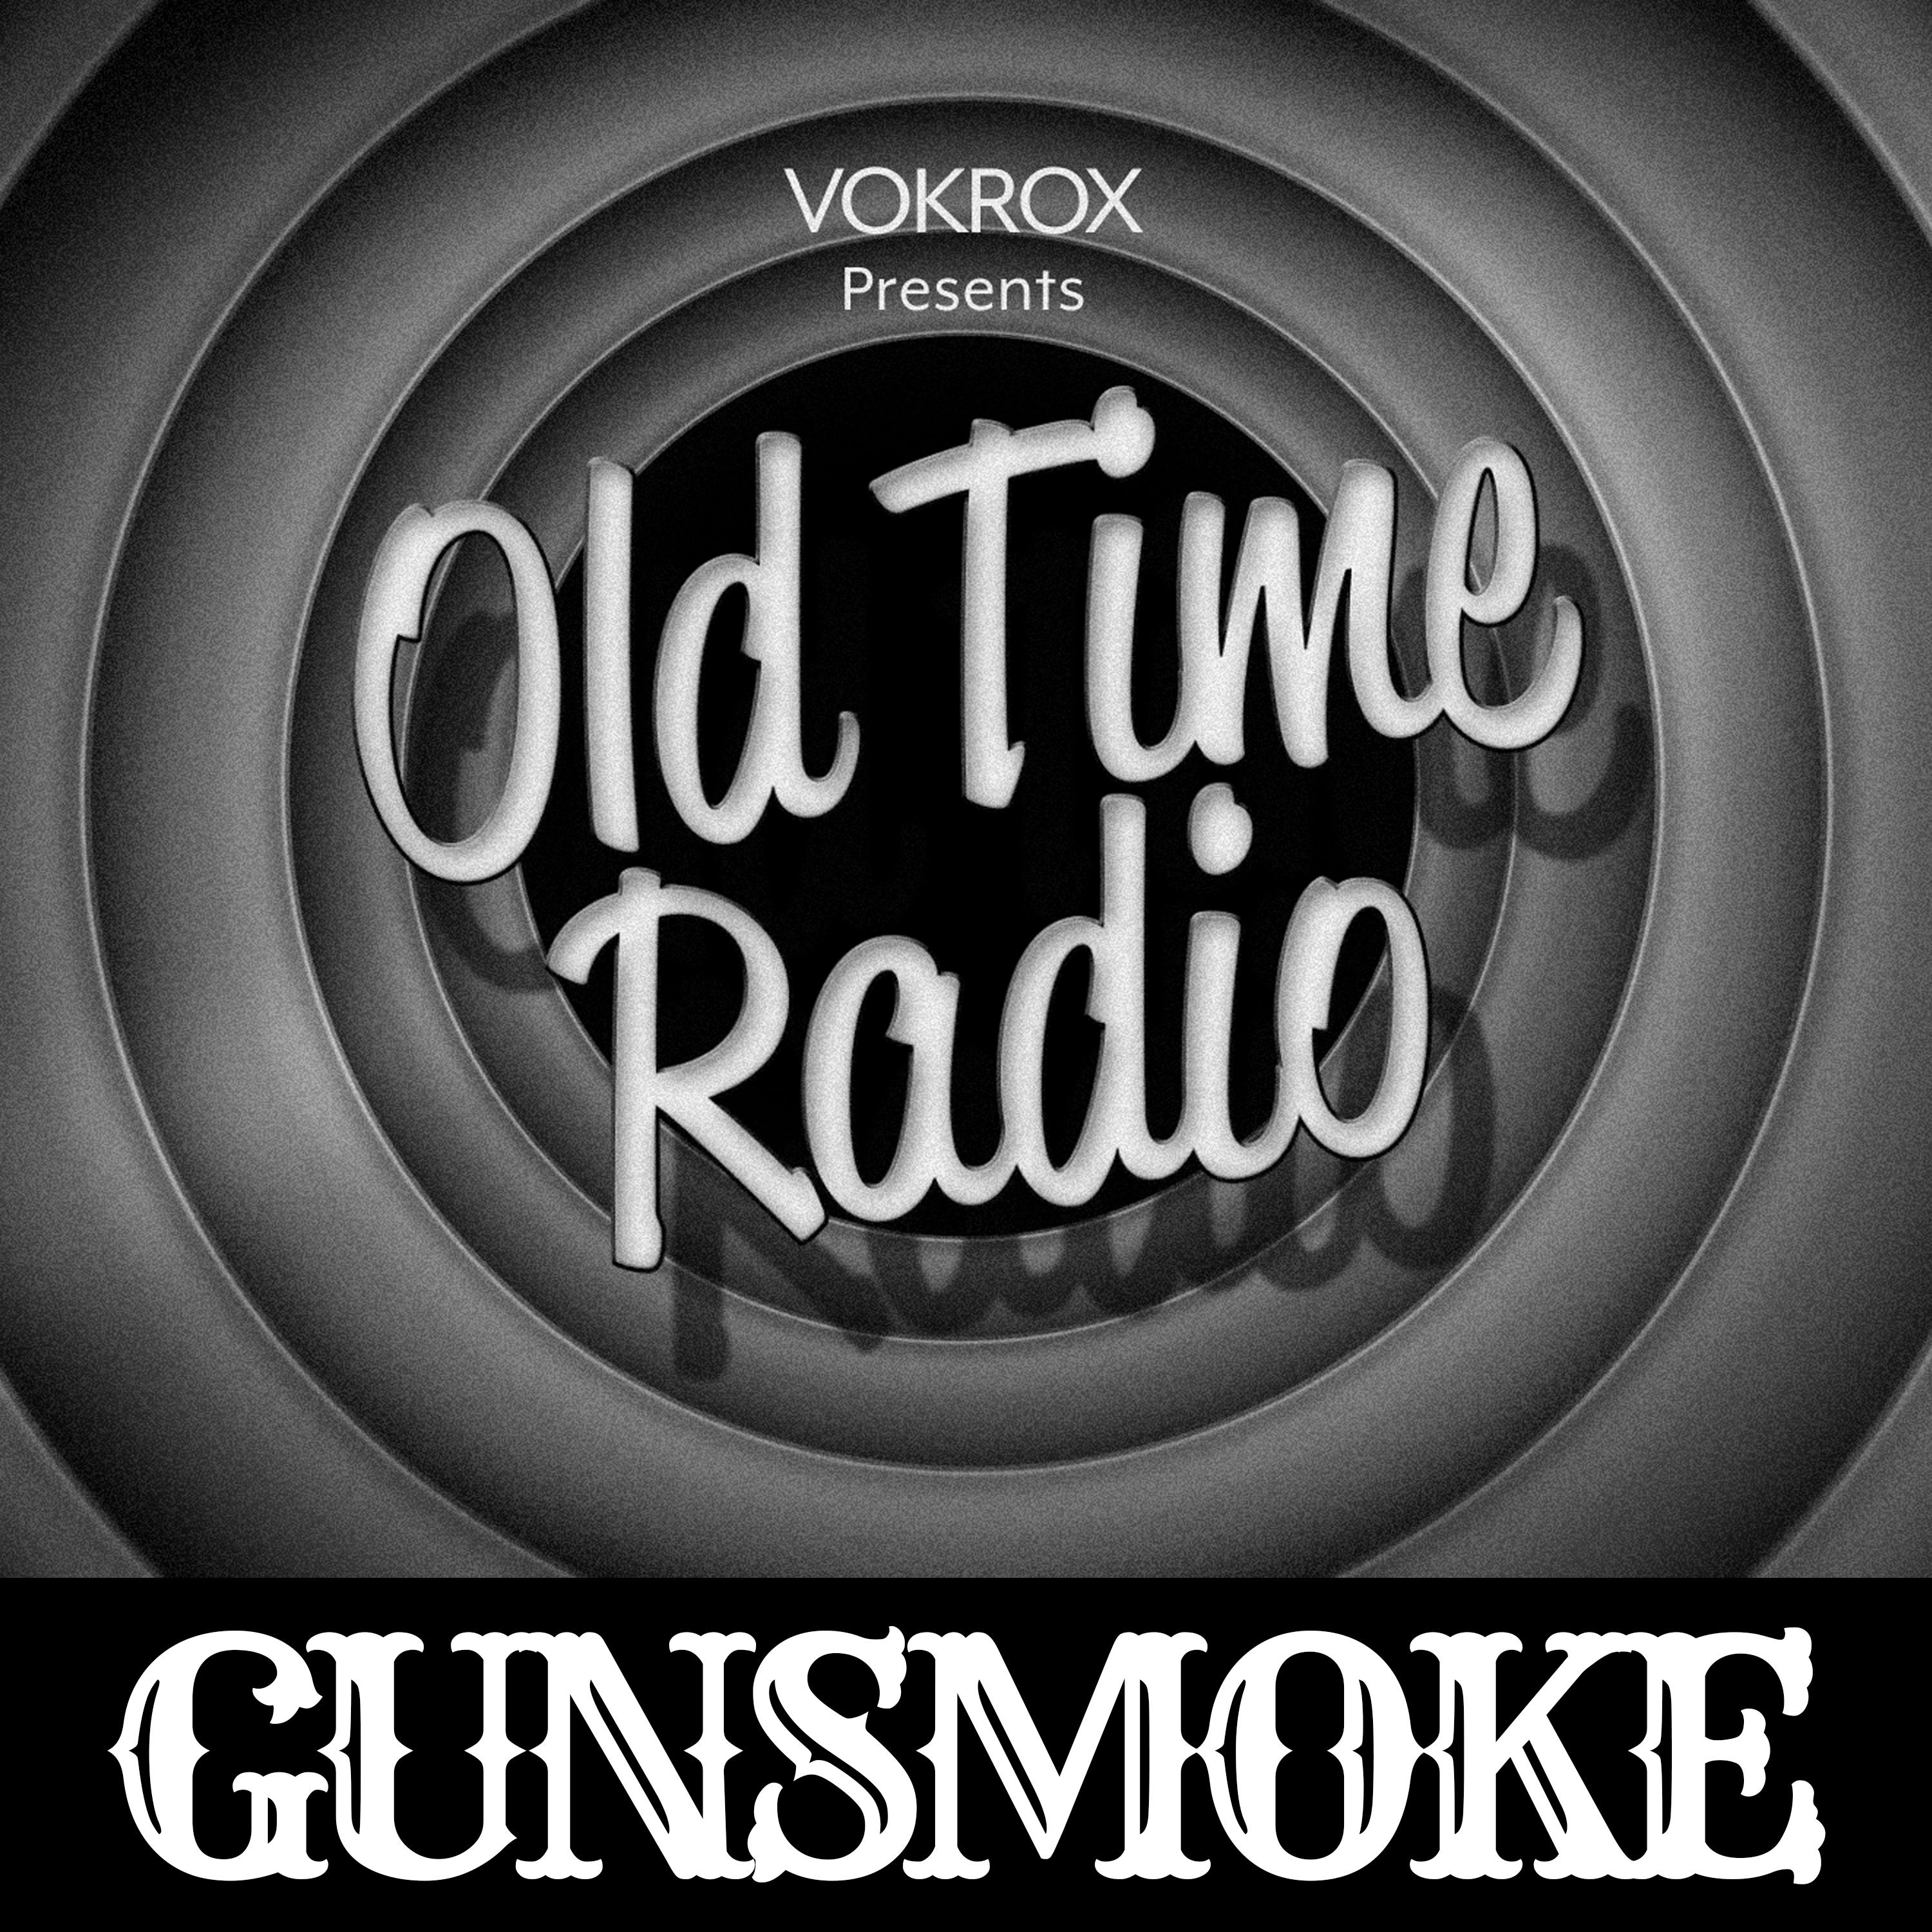 Gunsmoke | Old Time Radio